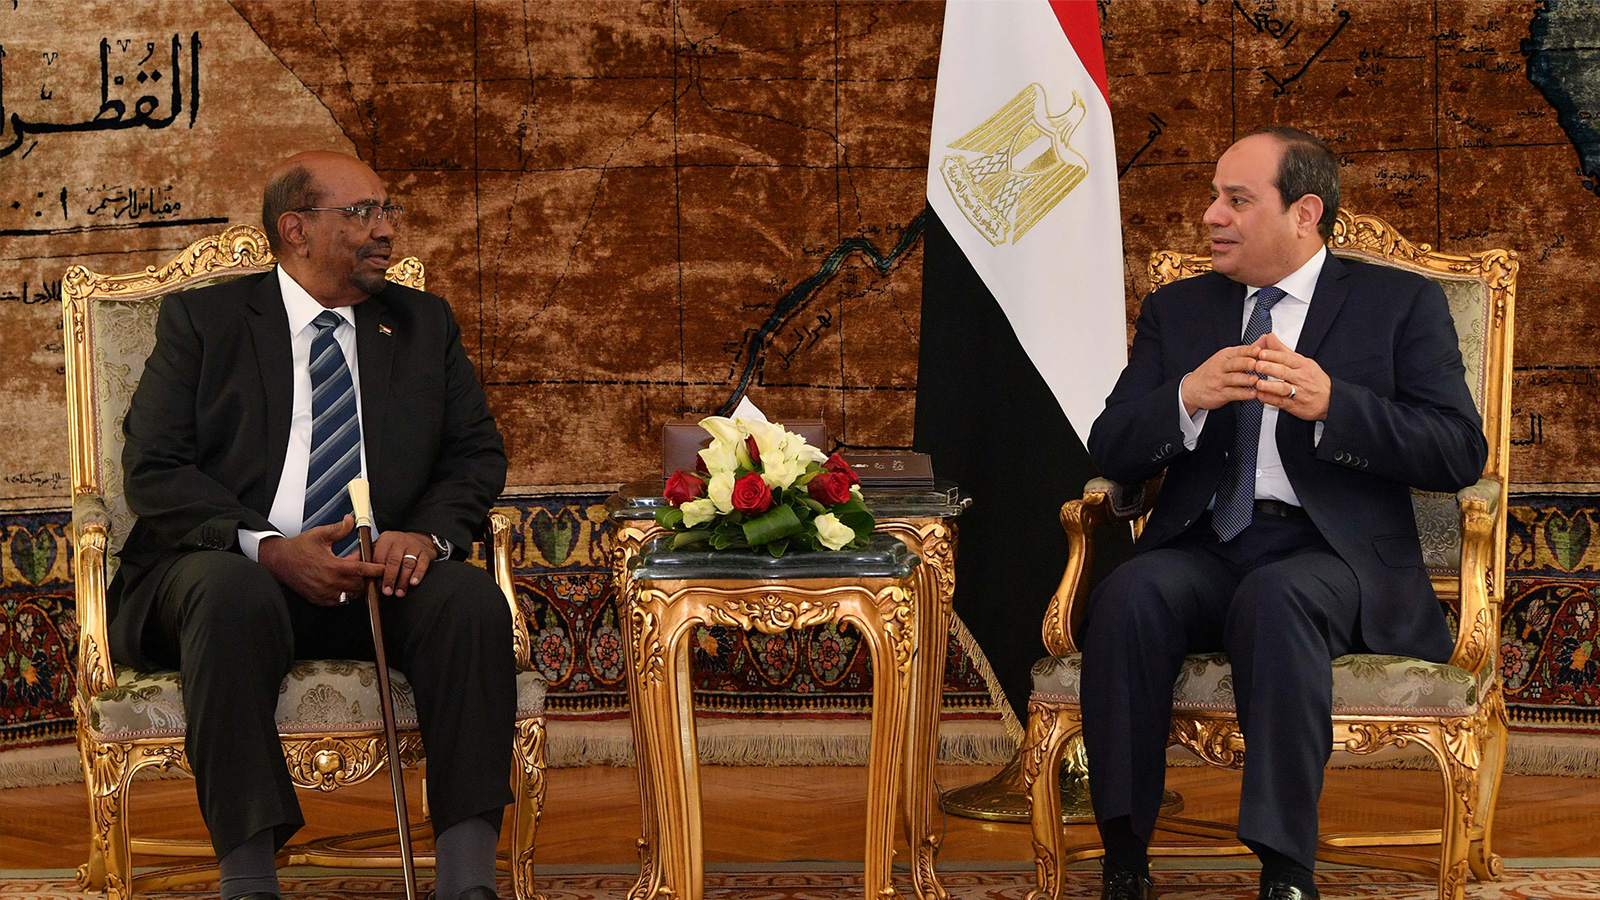  الرئيس السوداني (يسار) اتهم أثناء زيارته الأخيرة لمصر جهات لم يسمها بمحاولة إعادة إنتاج ربيع عربي في بلاده(الأوروبية)